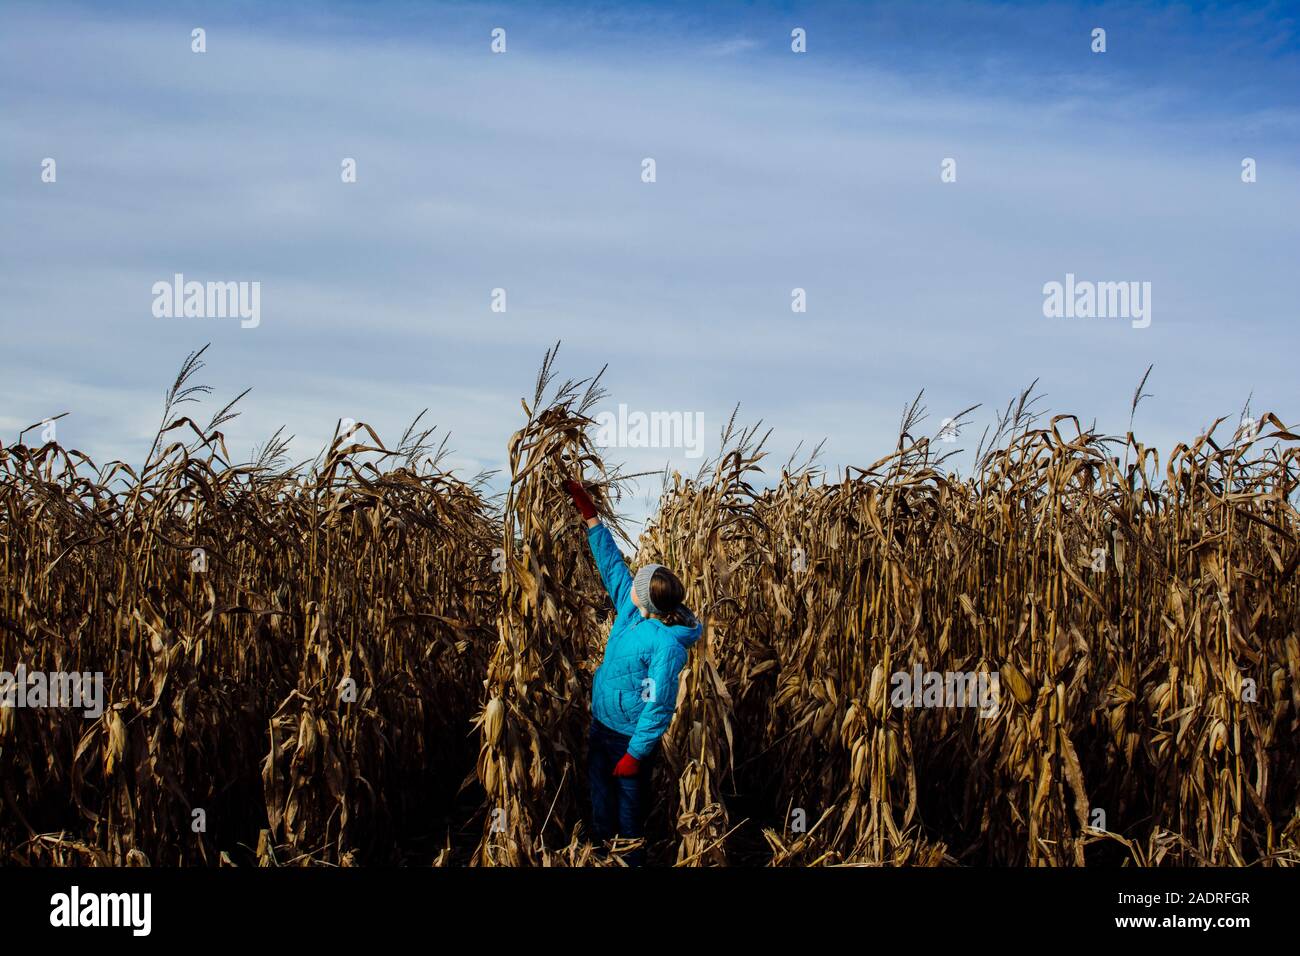 Vérification de la hauteur de la jeune fille dans un champ de maïs Banque D'Images